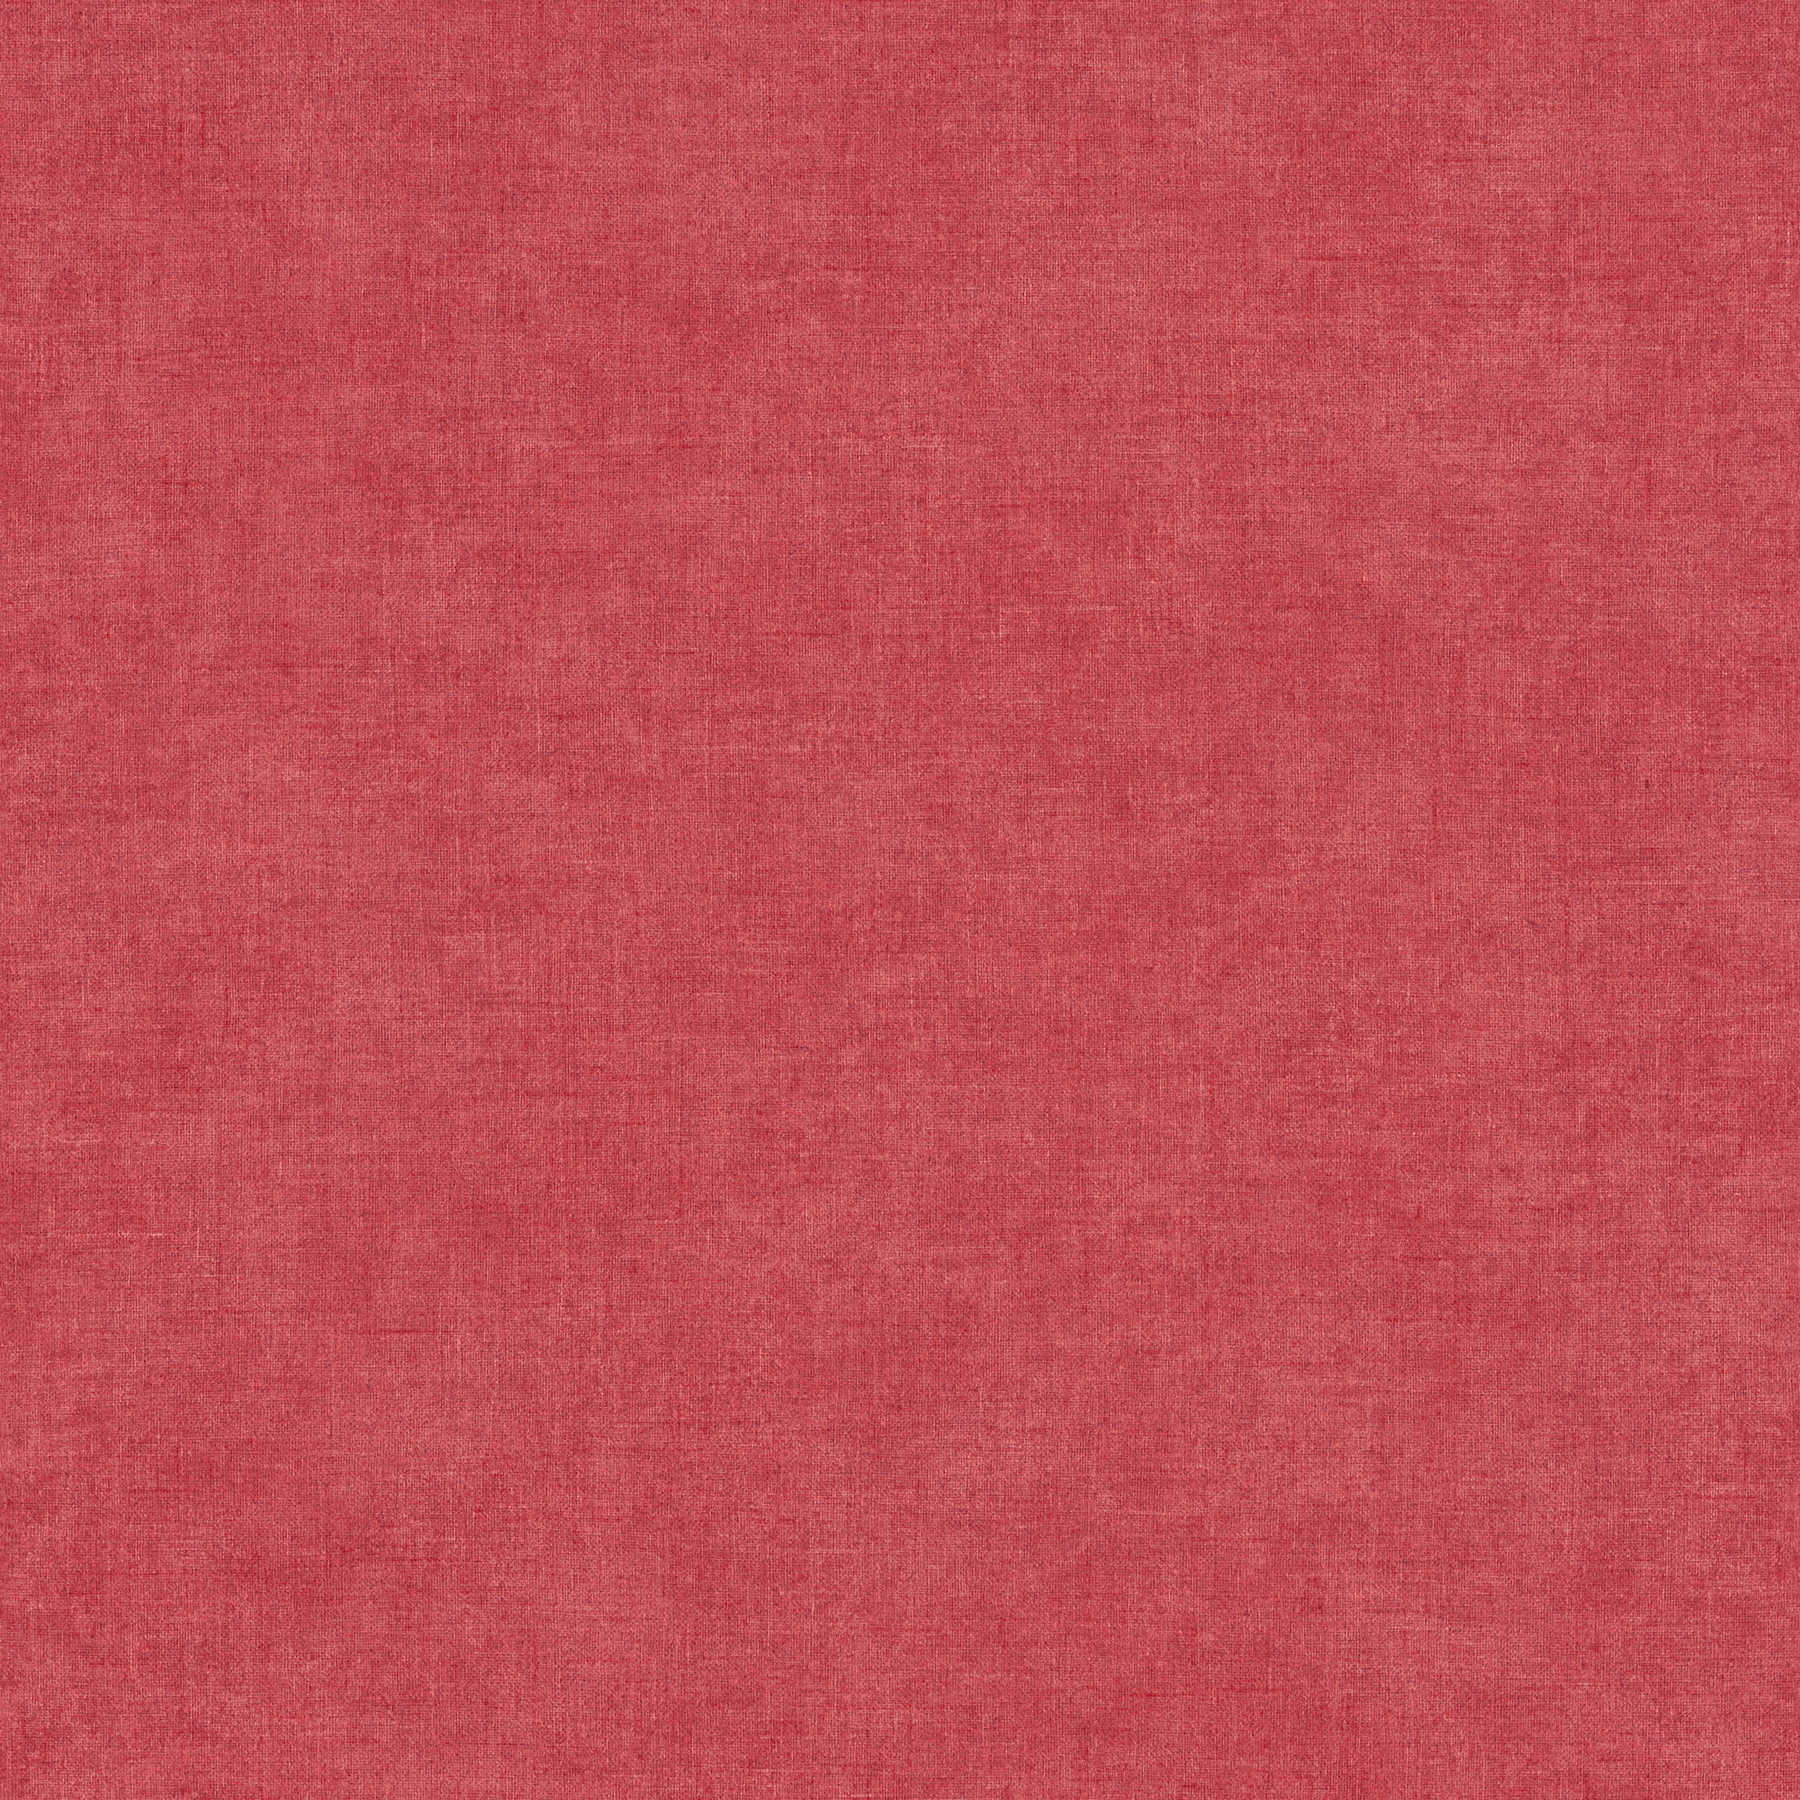 Rote Tapete einfarbig Himbeerrot meliert mit seidenmatt Glanz
